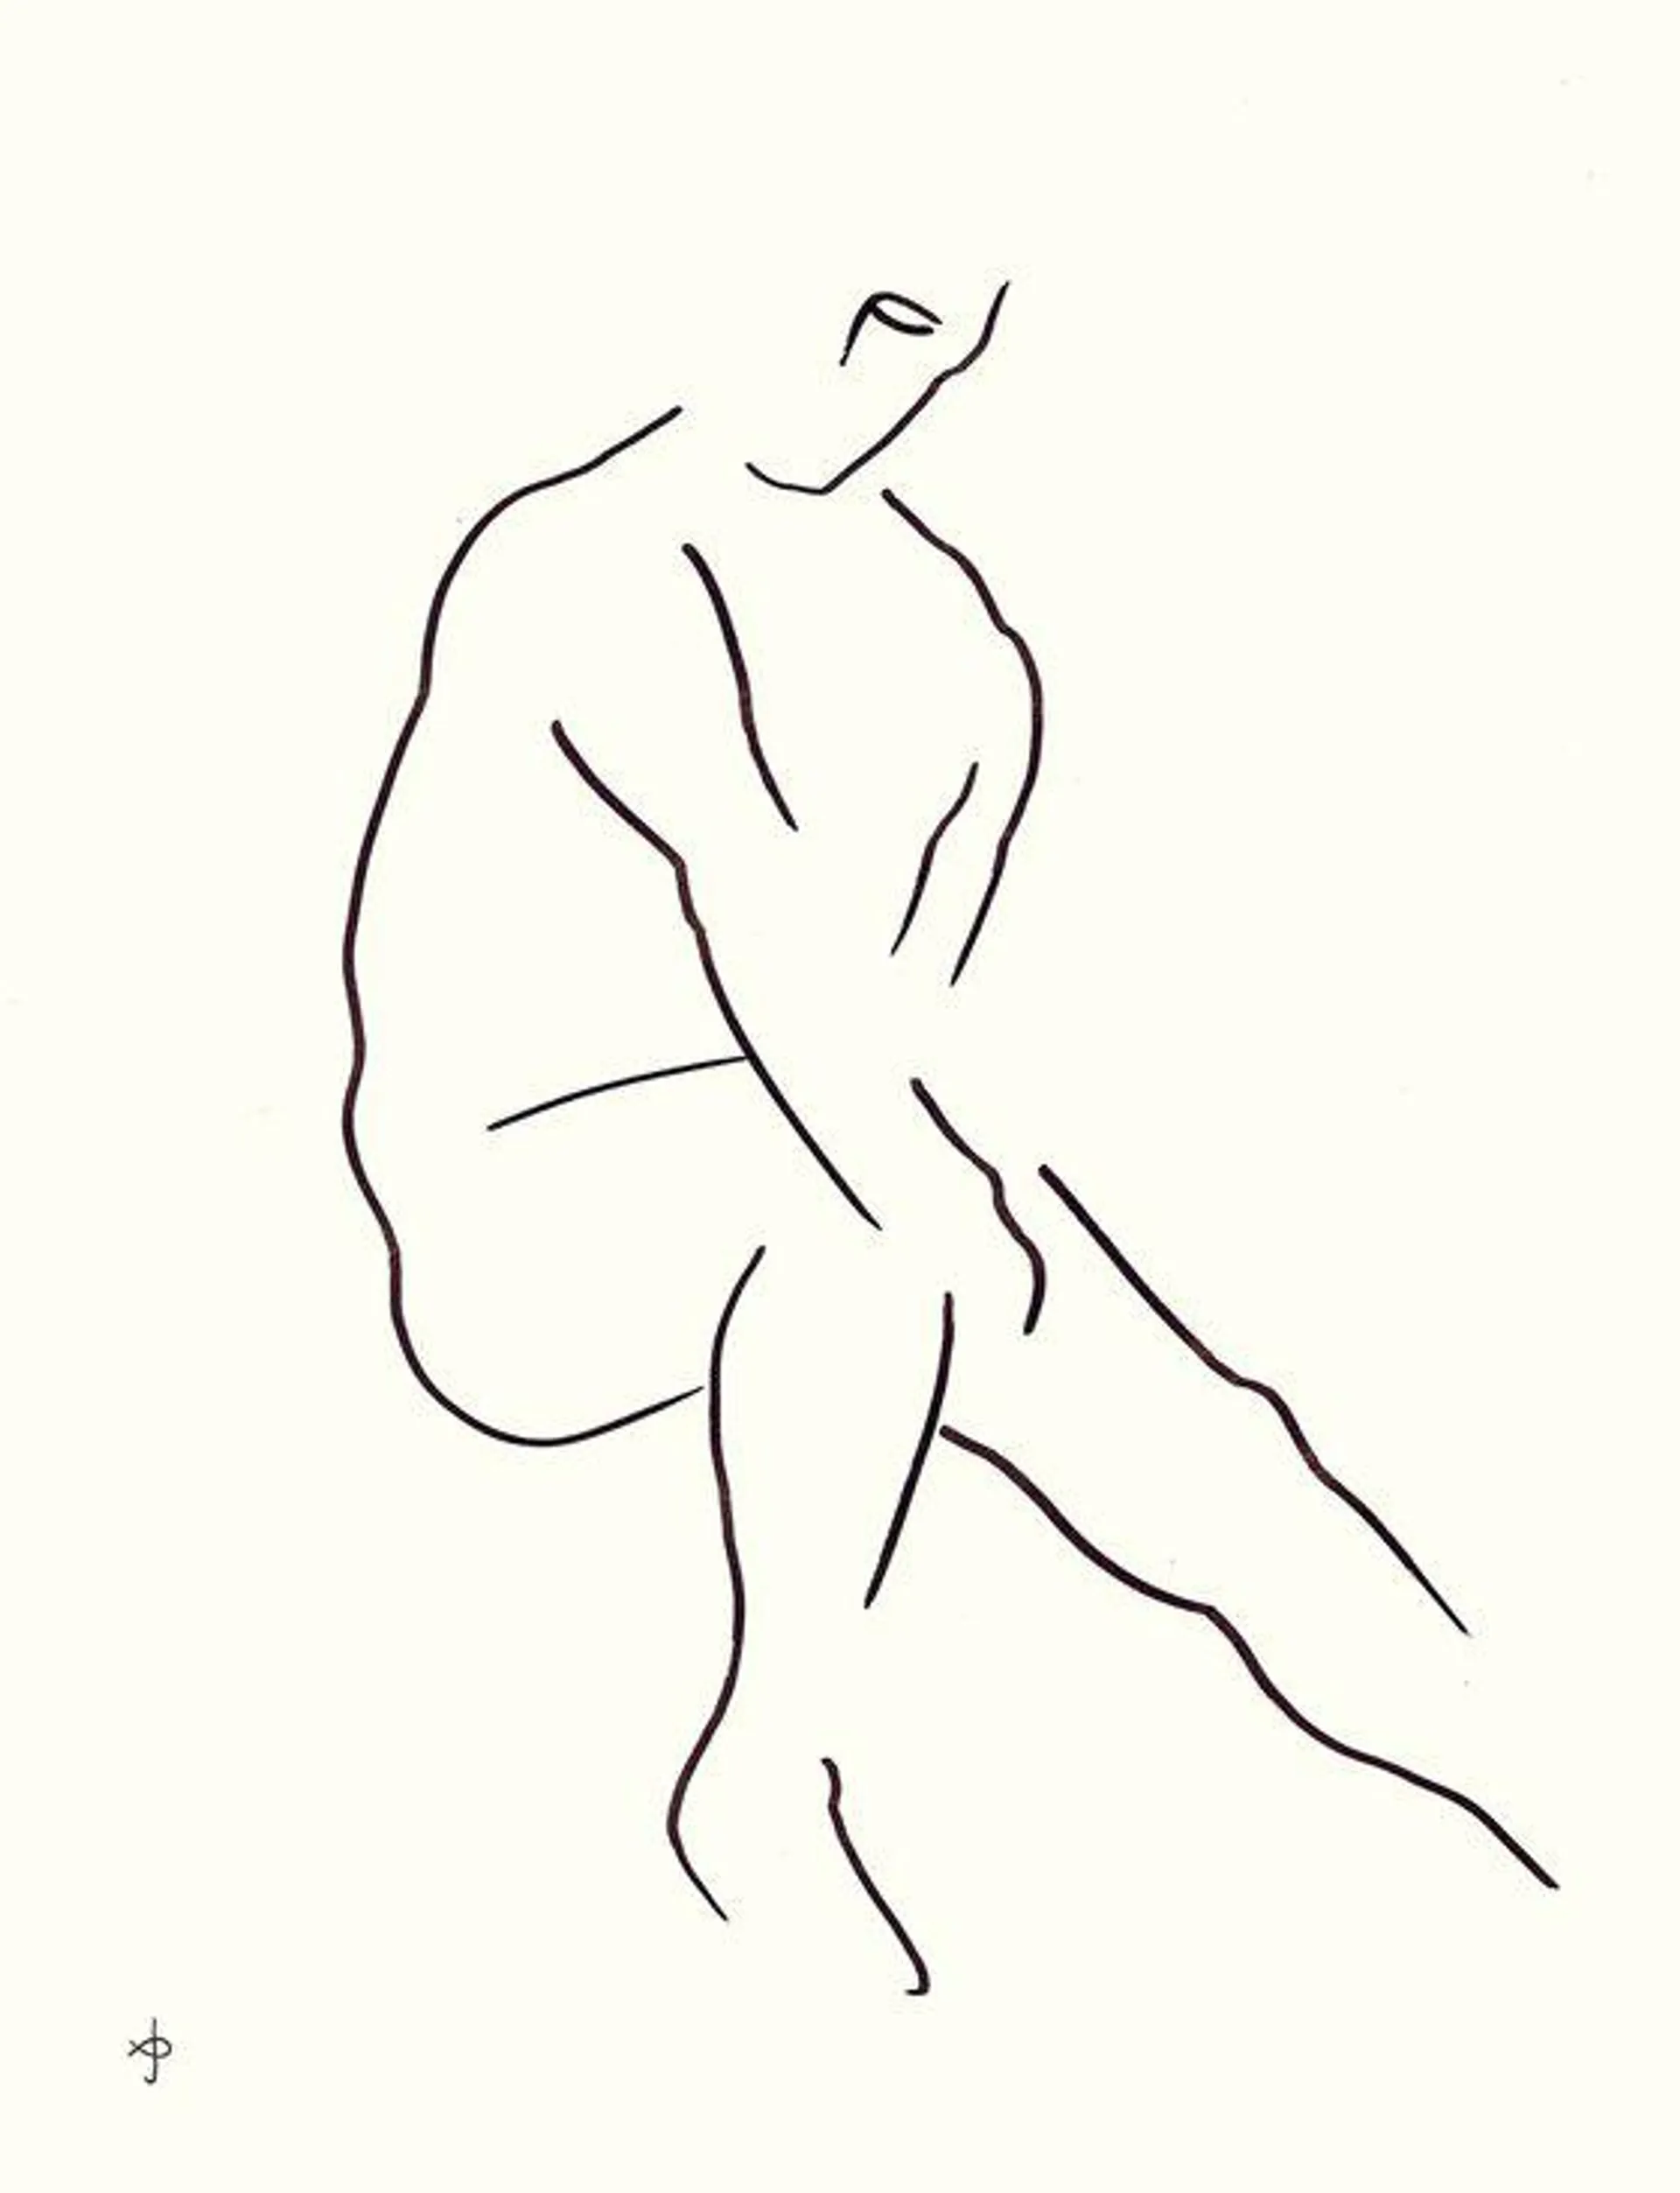 Male nude #001 (2020)